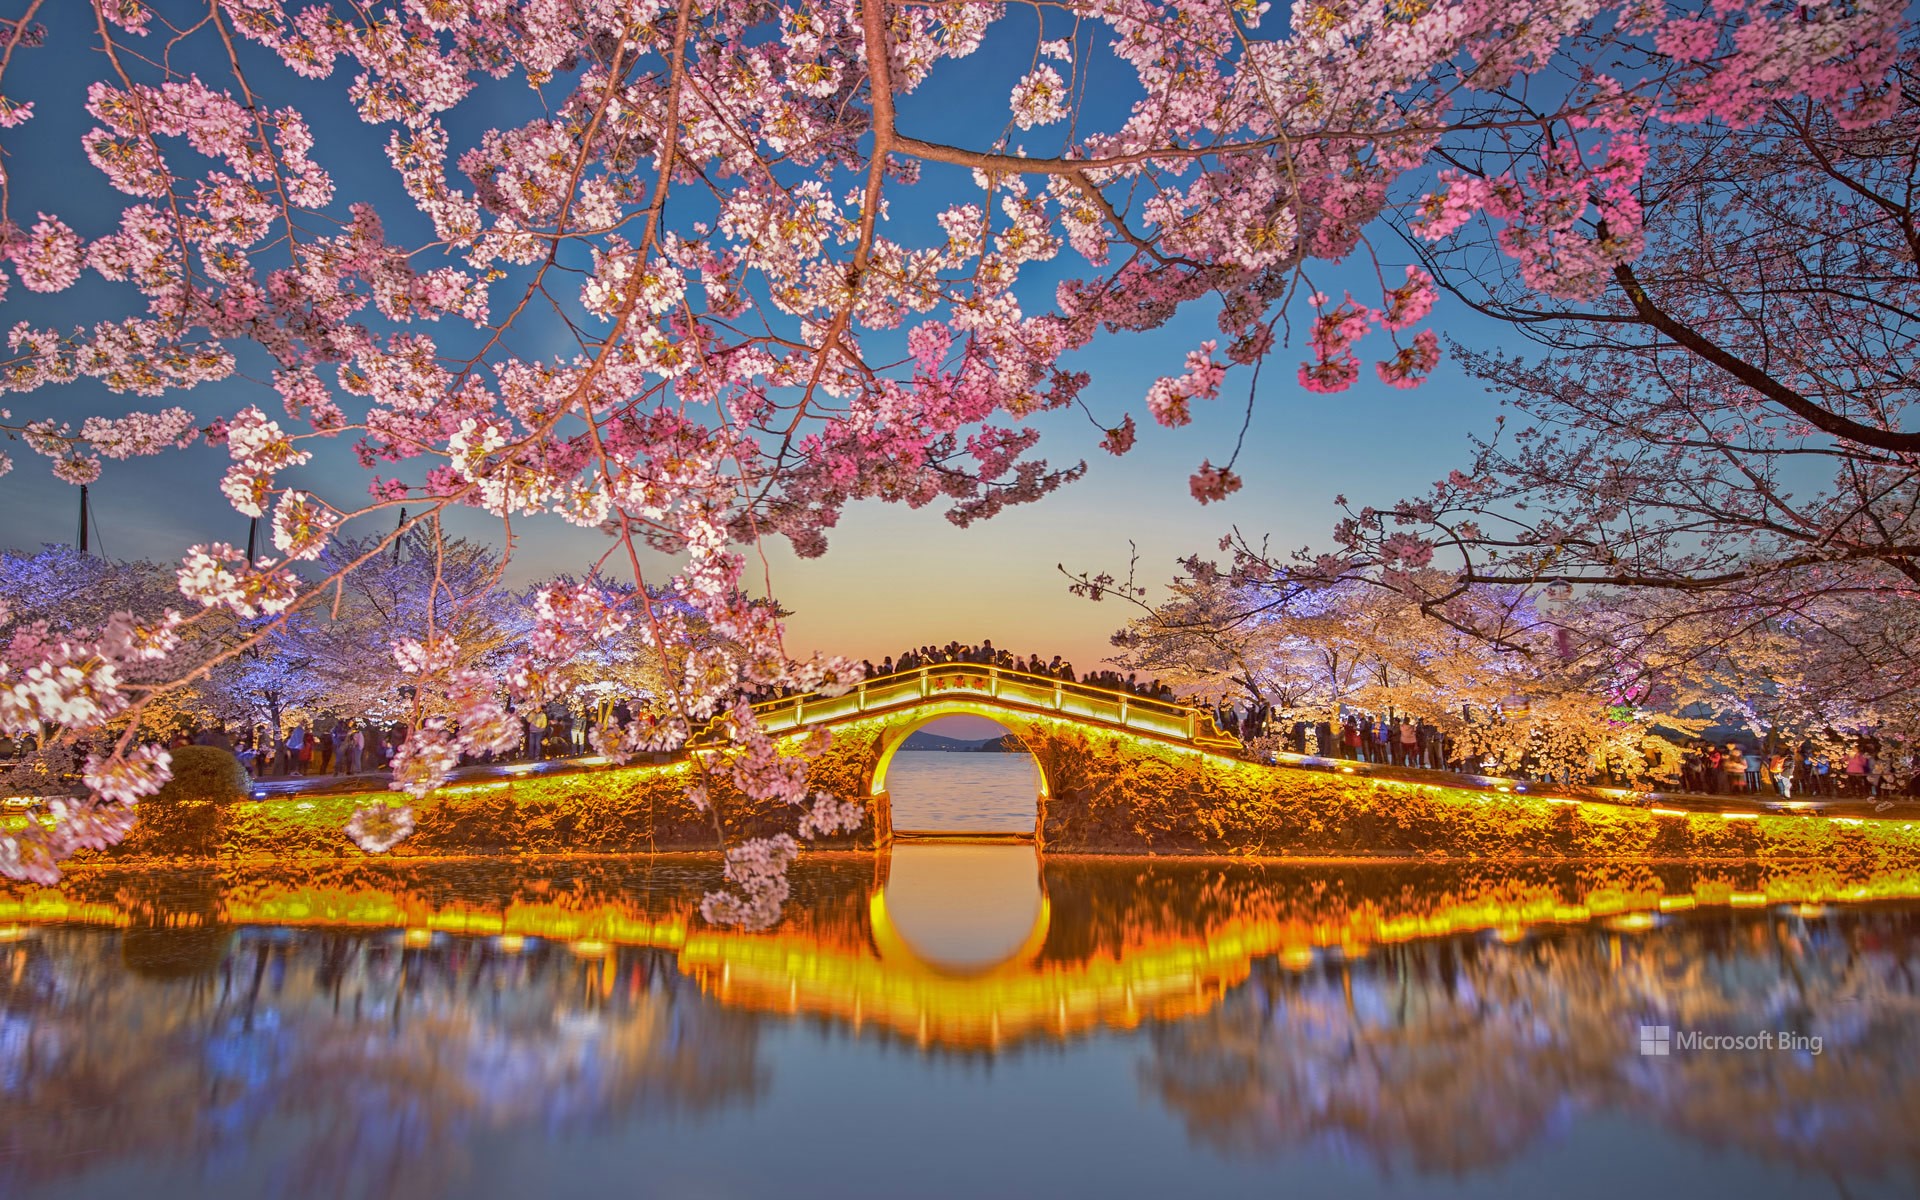 Cherry blossoms, Lake Tai, Wuxi, China